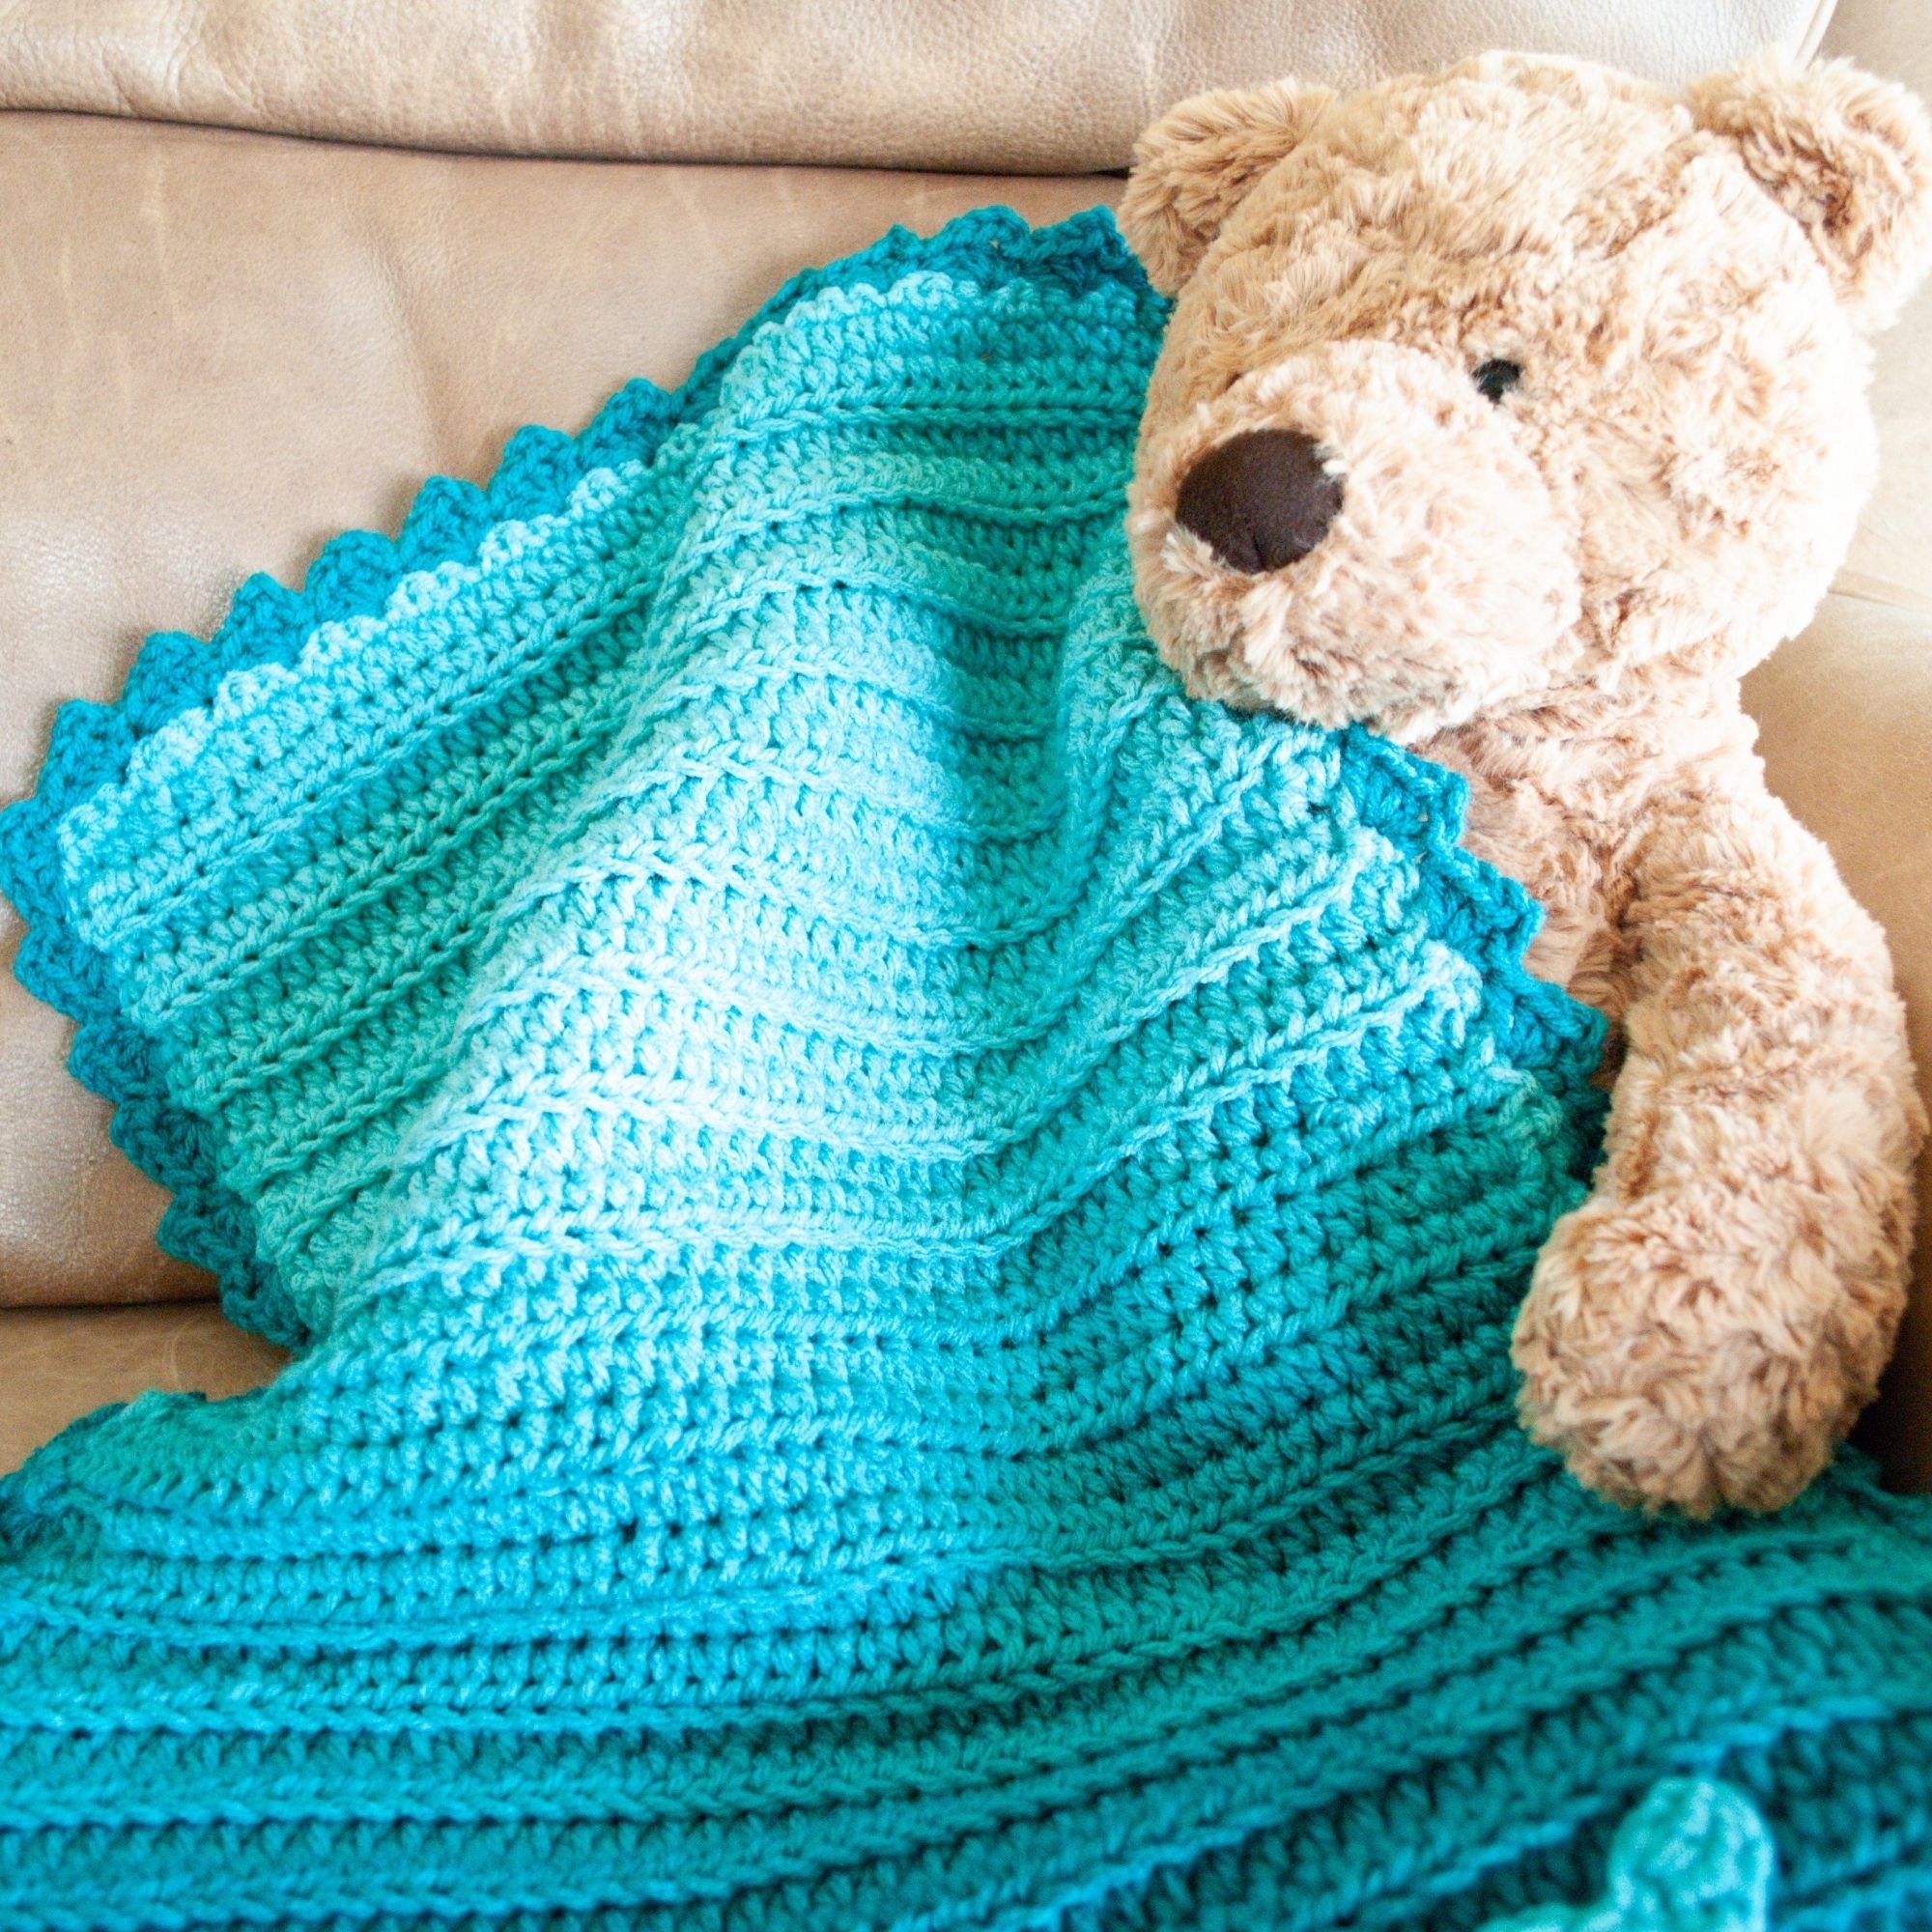 My Hobby Is Crochet: Fabian's Ombré Baby Blanket - Free Crochet